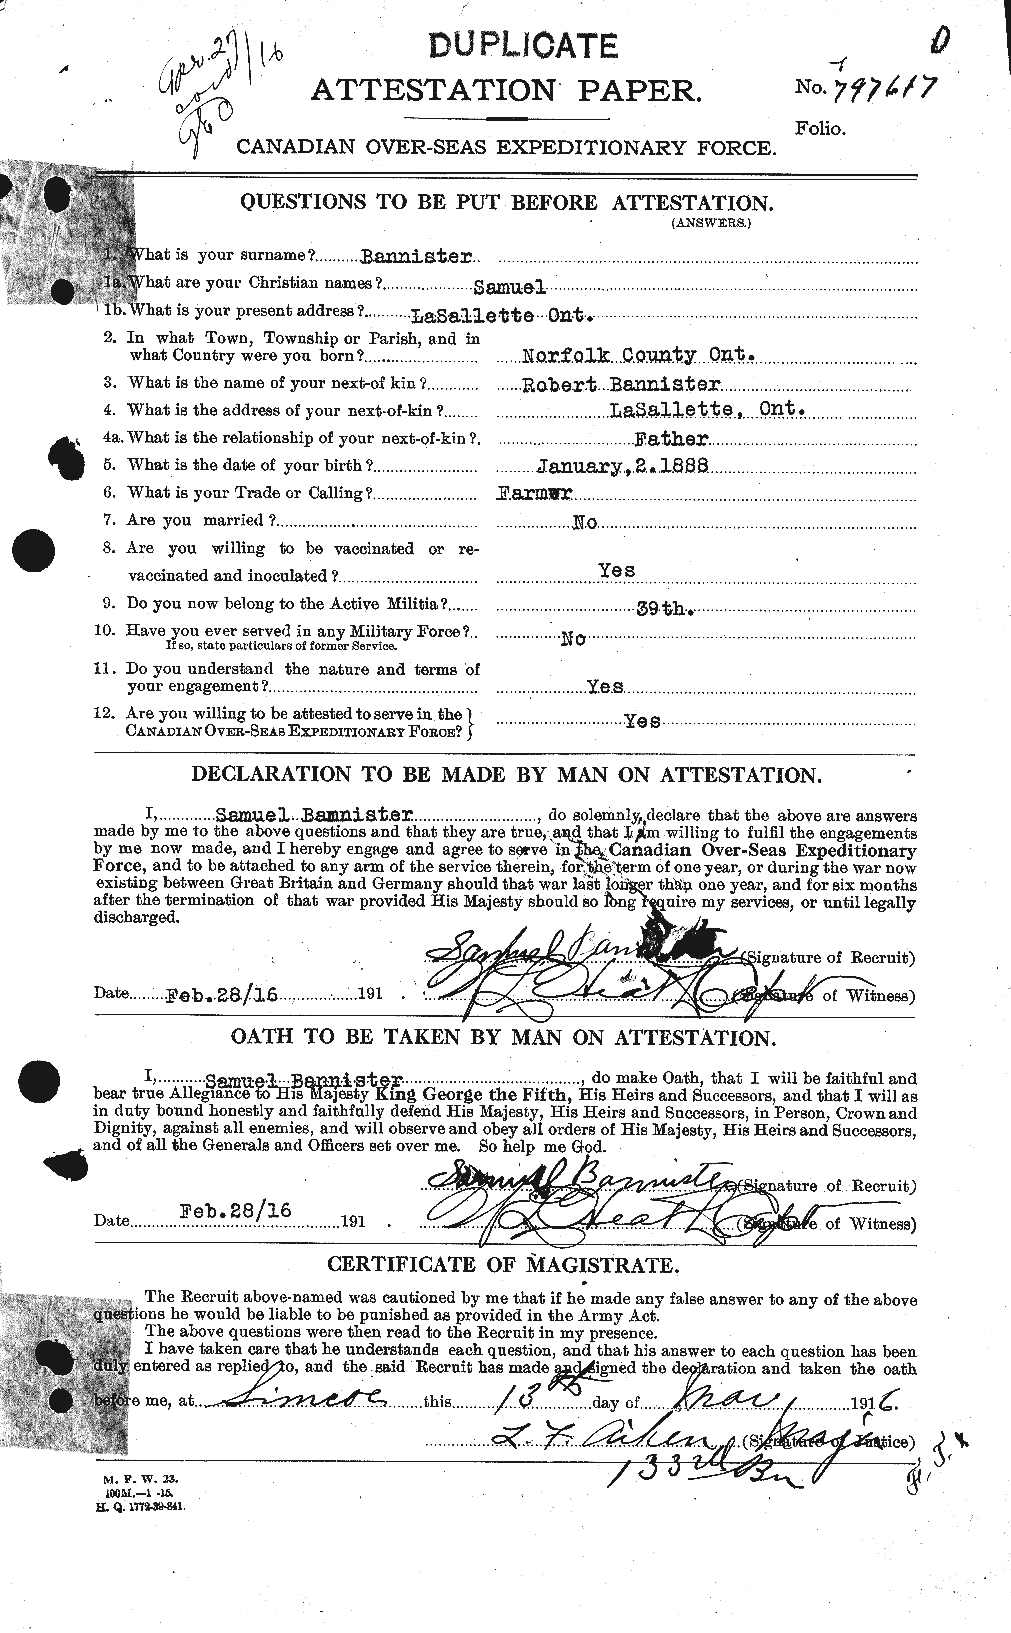 Dossiers du Personnel de la Première Guerre mondiale - CEC 224765a